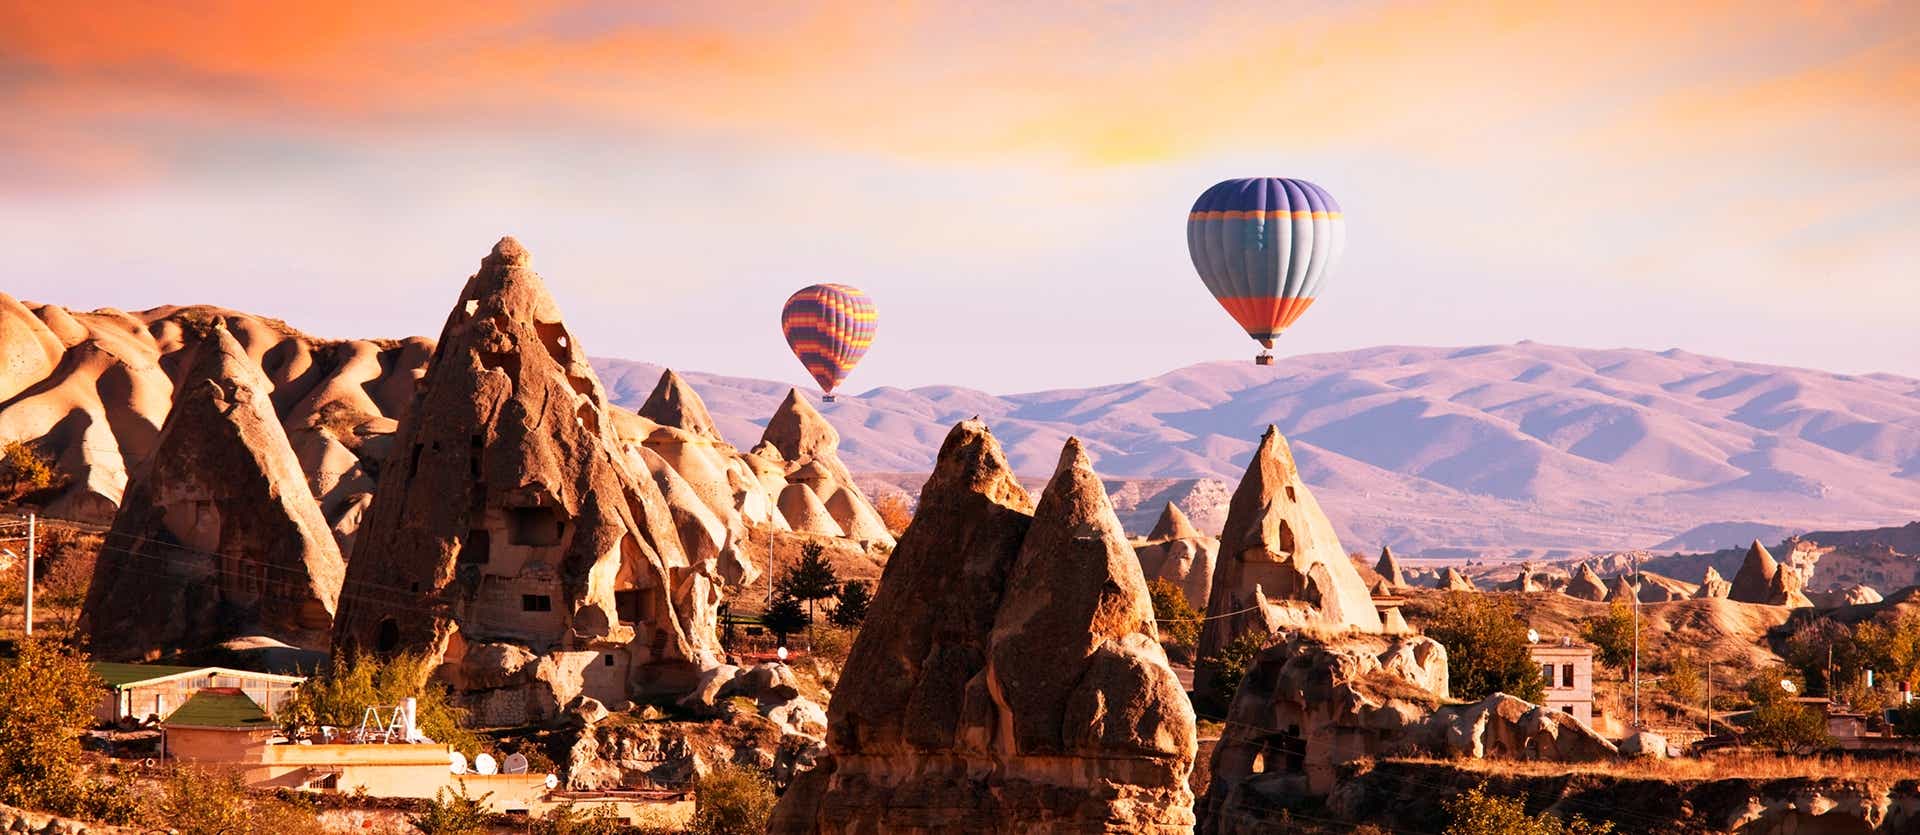 Hot Air Balloons <span class="iconos separador"></span> Cappadocia <span class="iconos separador"></span> Turkey